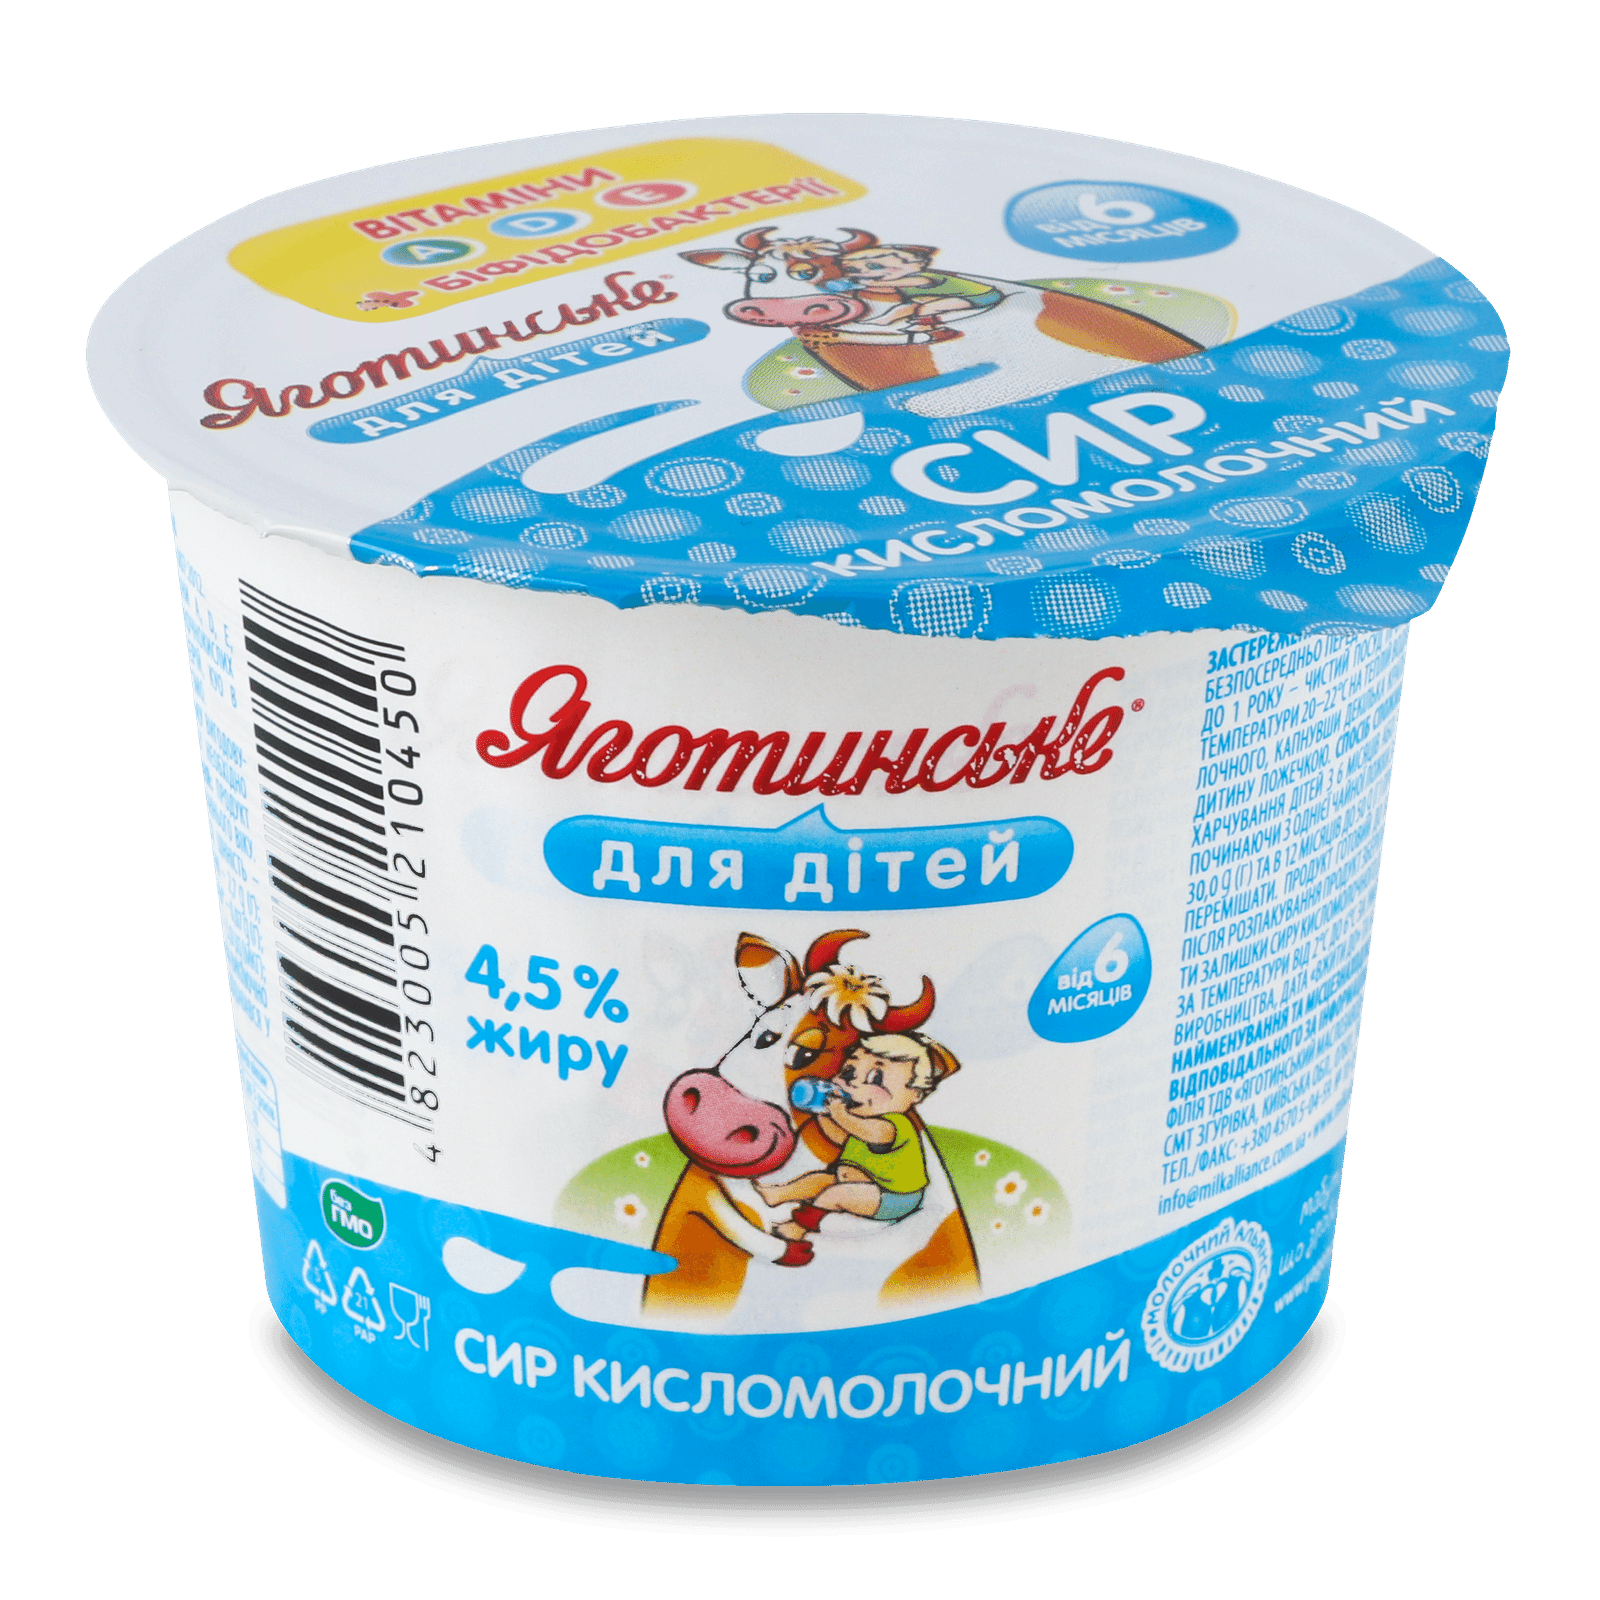 Сир кисломолочний Яготинське для дітей 4,5% - 1